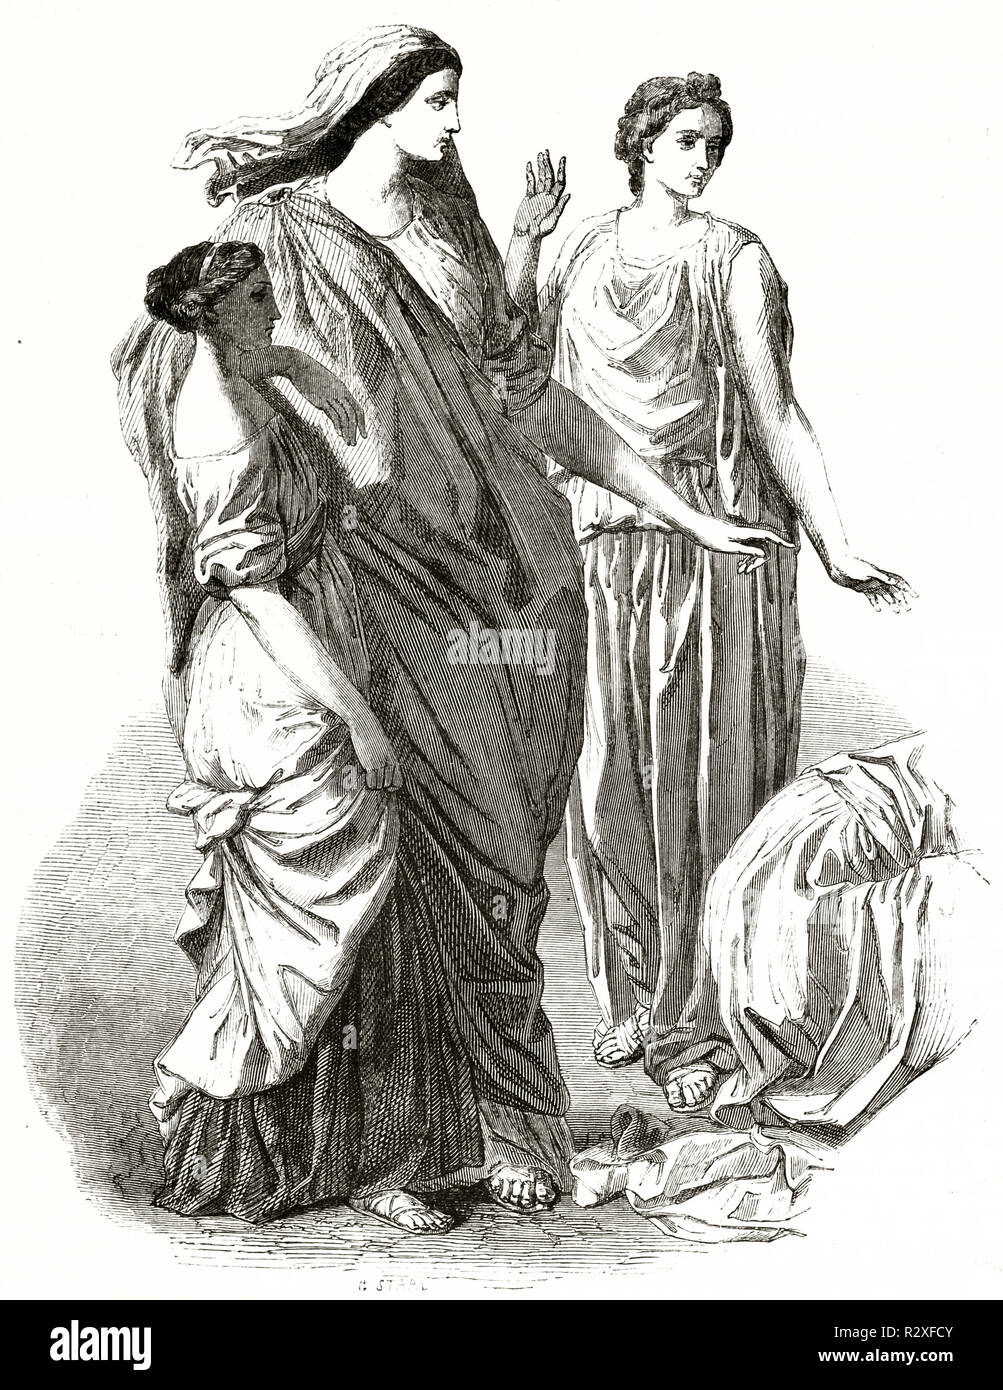 La figlia del faraone le salvataggio di Mosè dal Nilo floading (dettaglio di un dipinto di Nicolas Poussin). Publ. su Magasin pittoresco, Parigi, 1846 Foto Stock